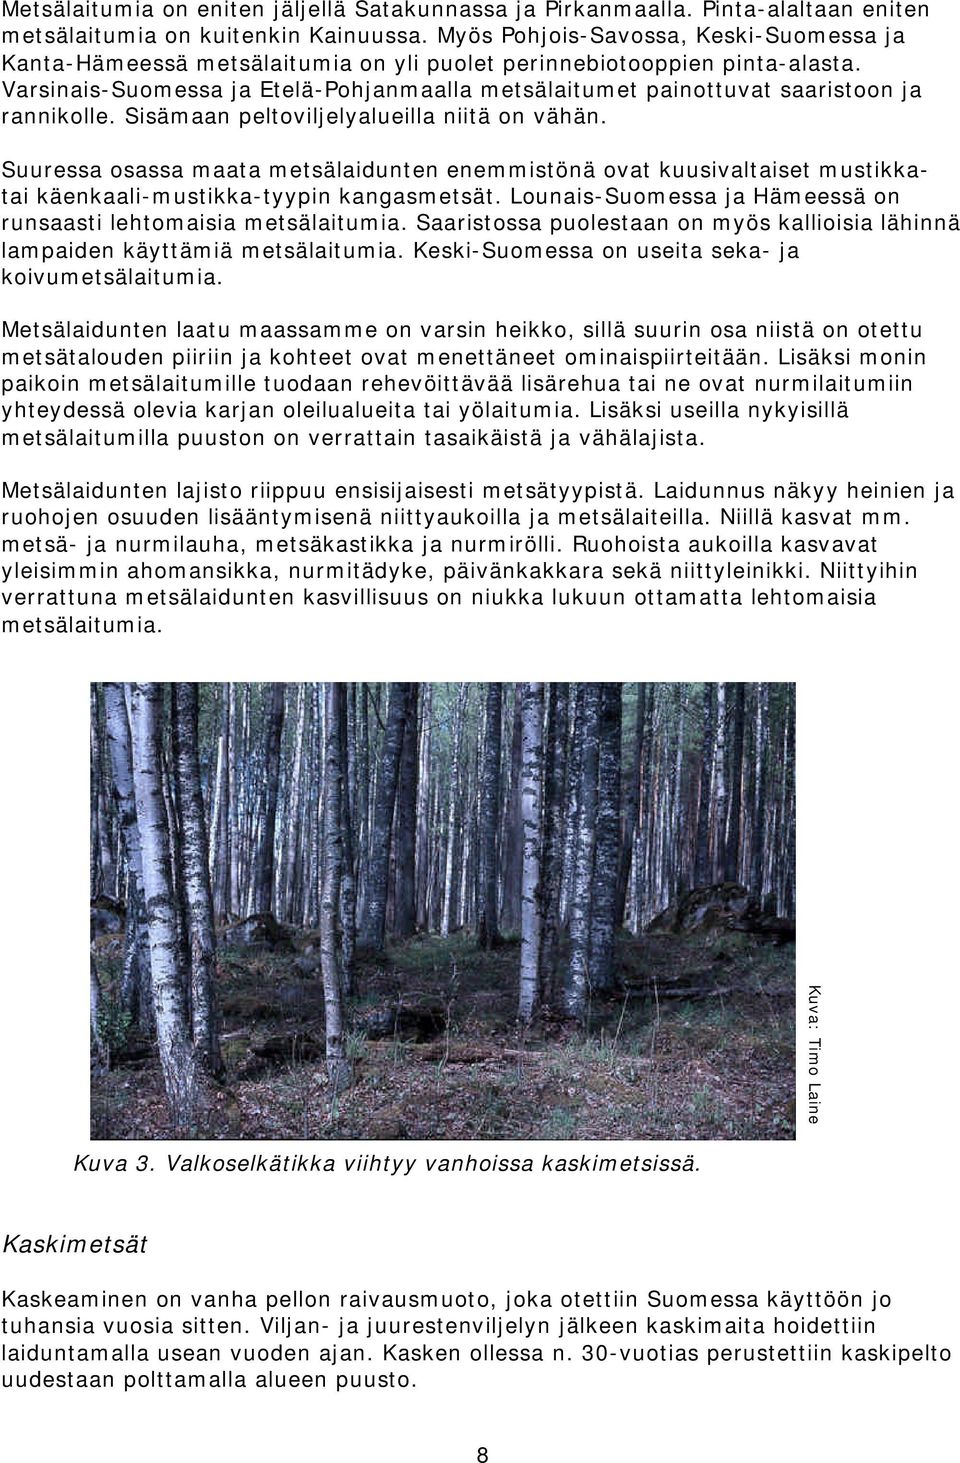 Varsinais-Suomessa ja Etelä-Pohjanmaalla metsälaitumet painottuvat saaristoon ja rannikolle. Sisämaan peltoviljelyalueilla niitä on vähän.